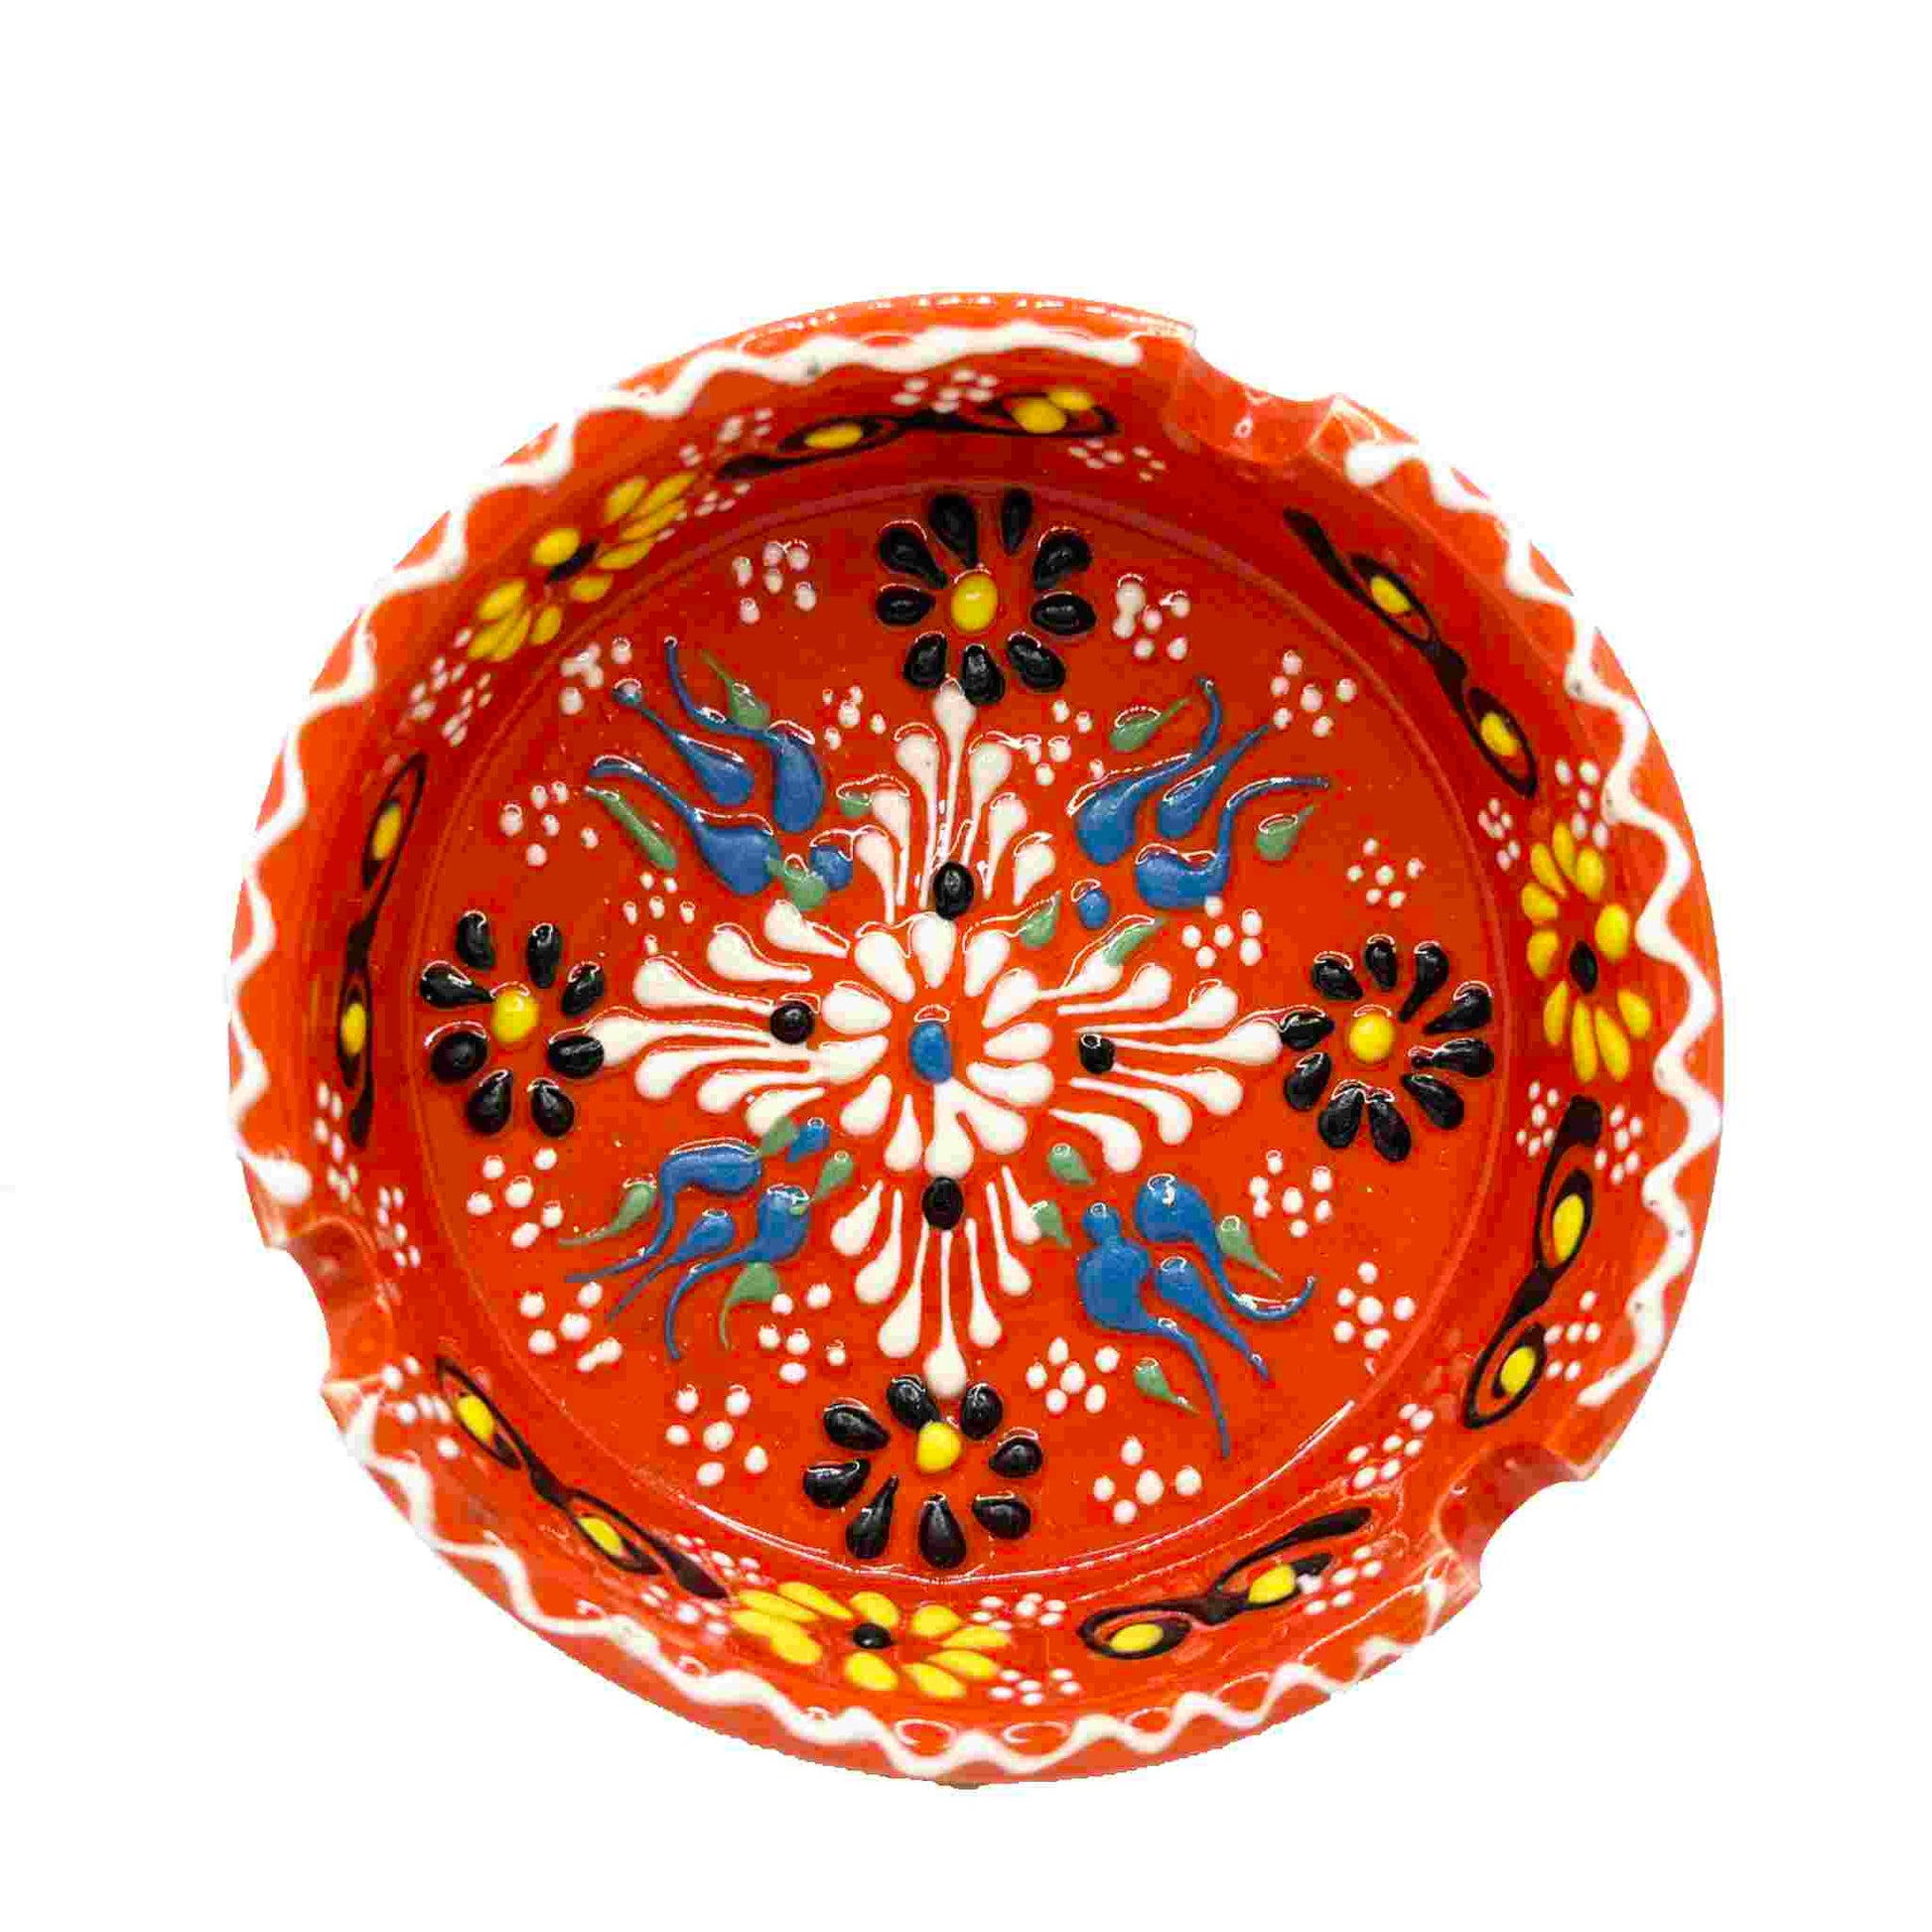 Cenicero de cerámica turca, artesanal, grande Lace naranja